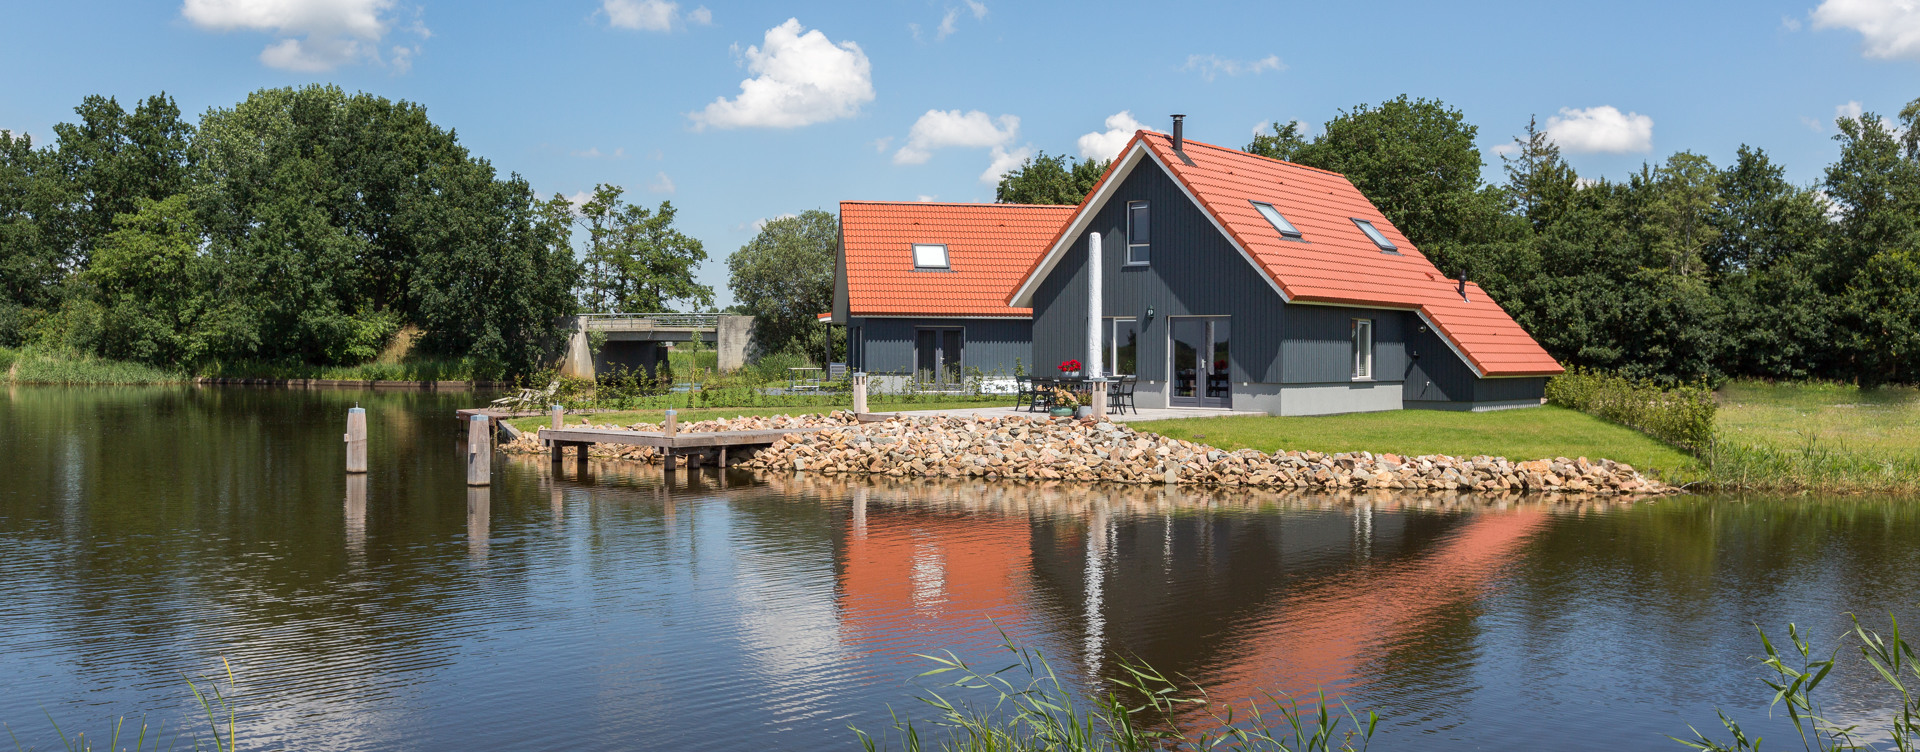 Erleben Sie einen entspannten Aufenthalt auf dem Wasser in Friesland